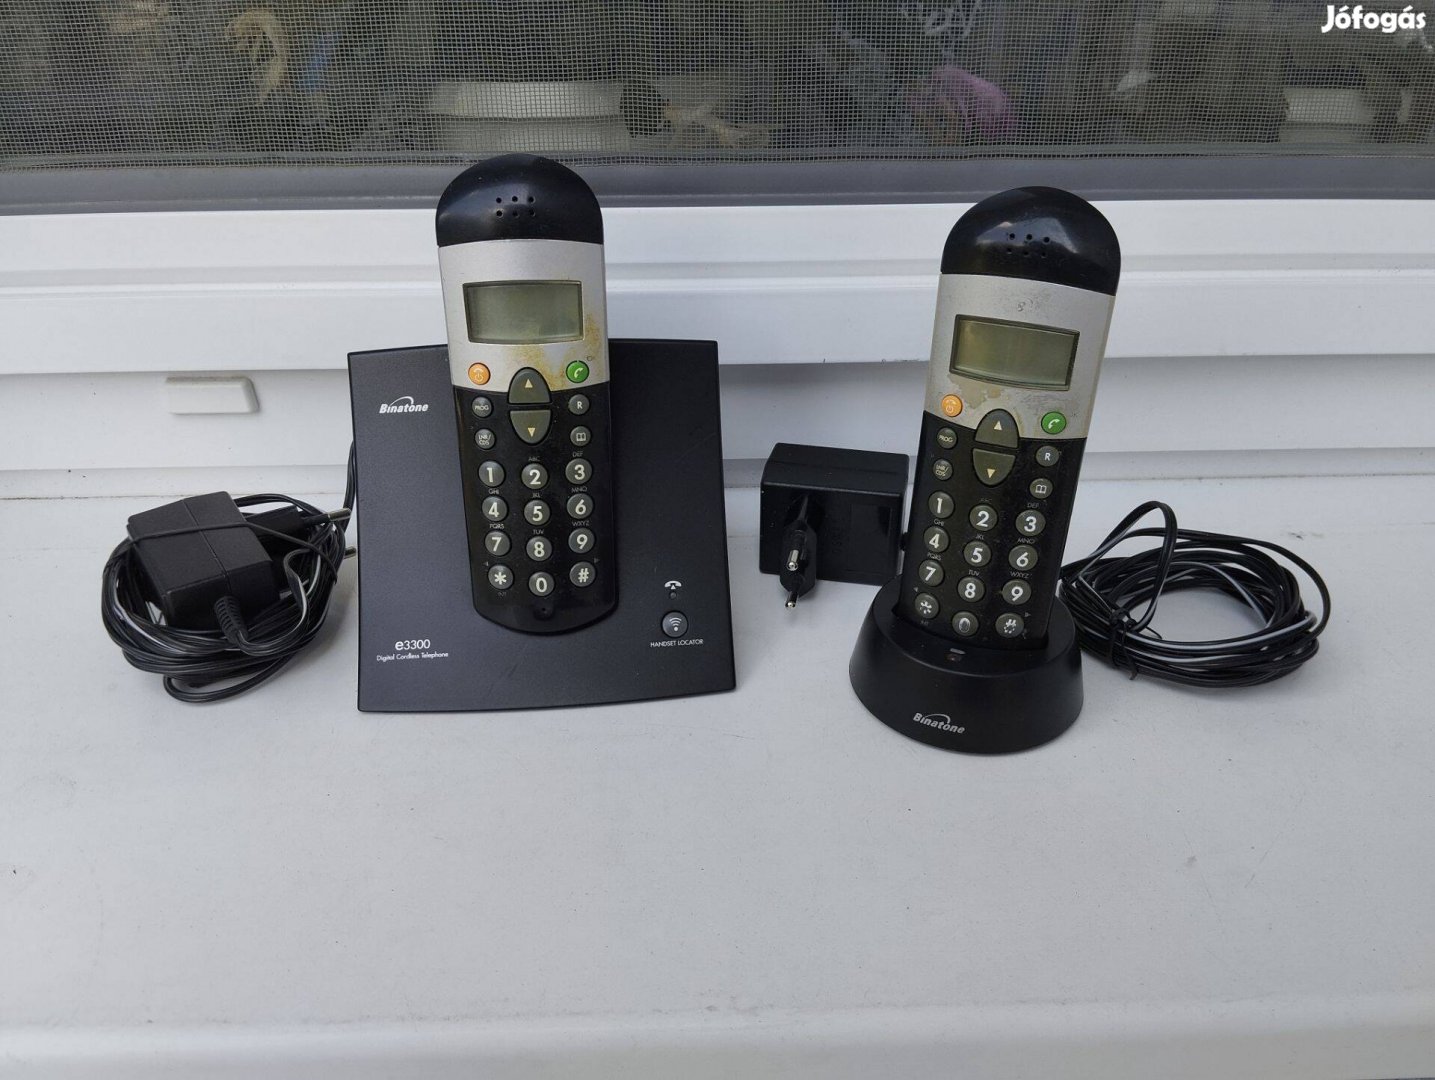 2 készülékes, hordozható telefon, Binetone márka